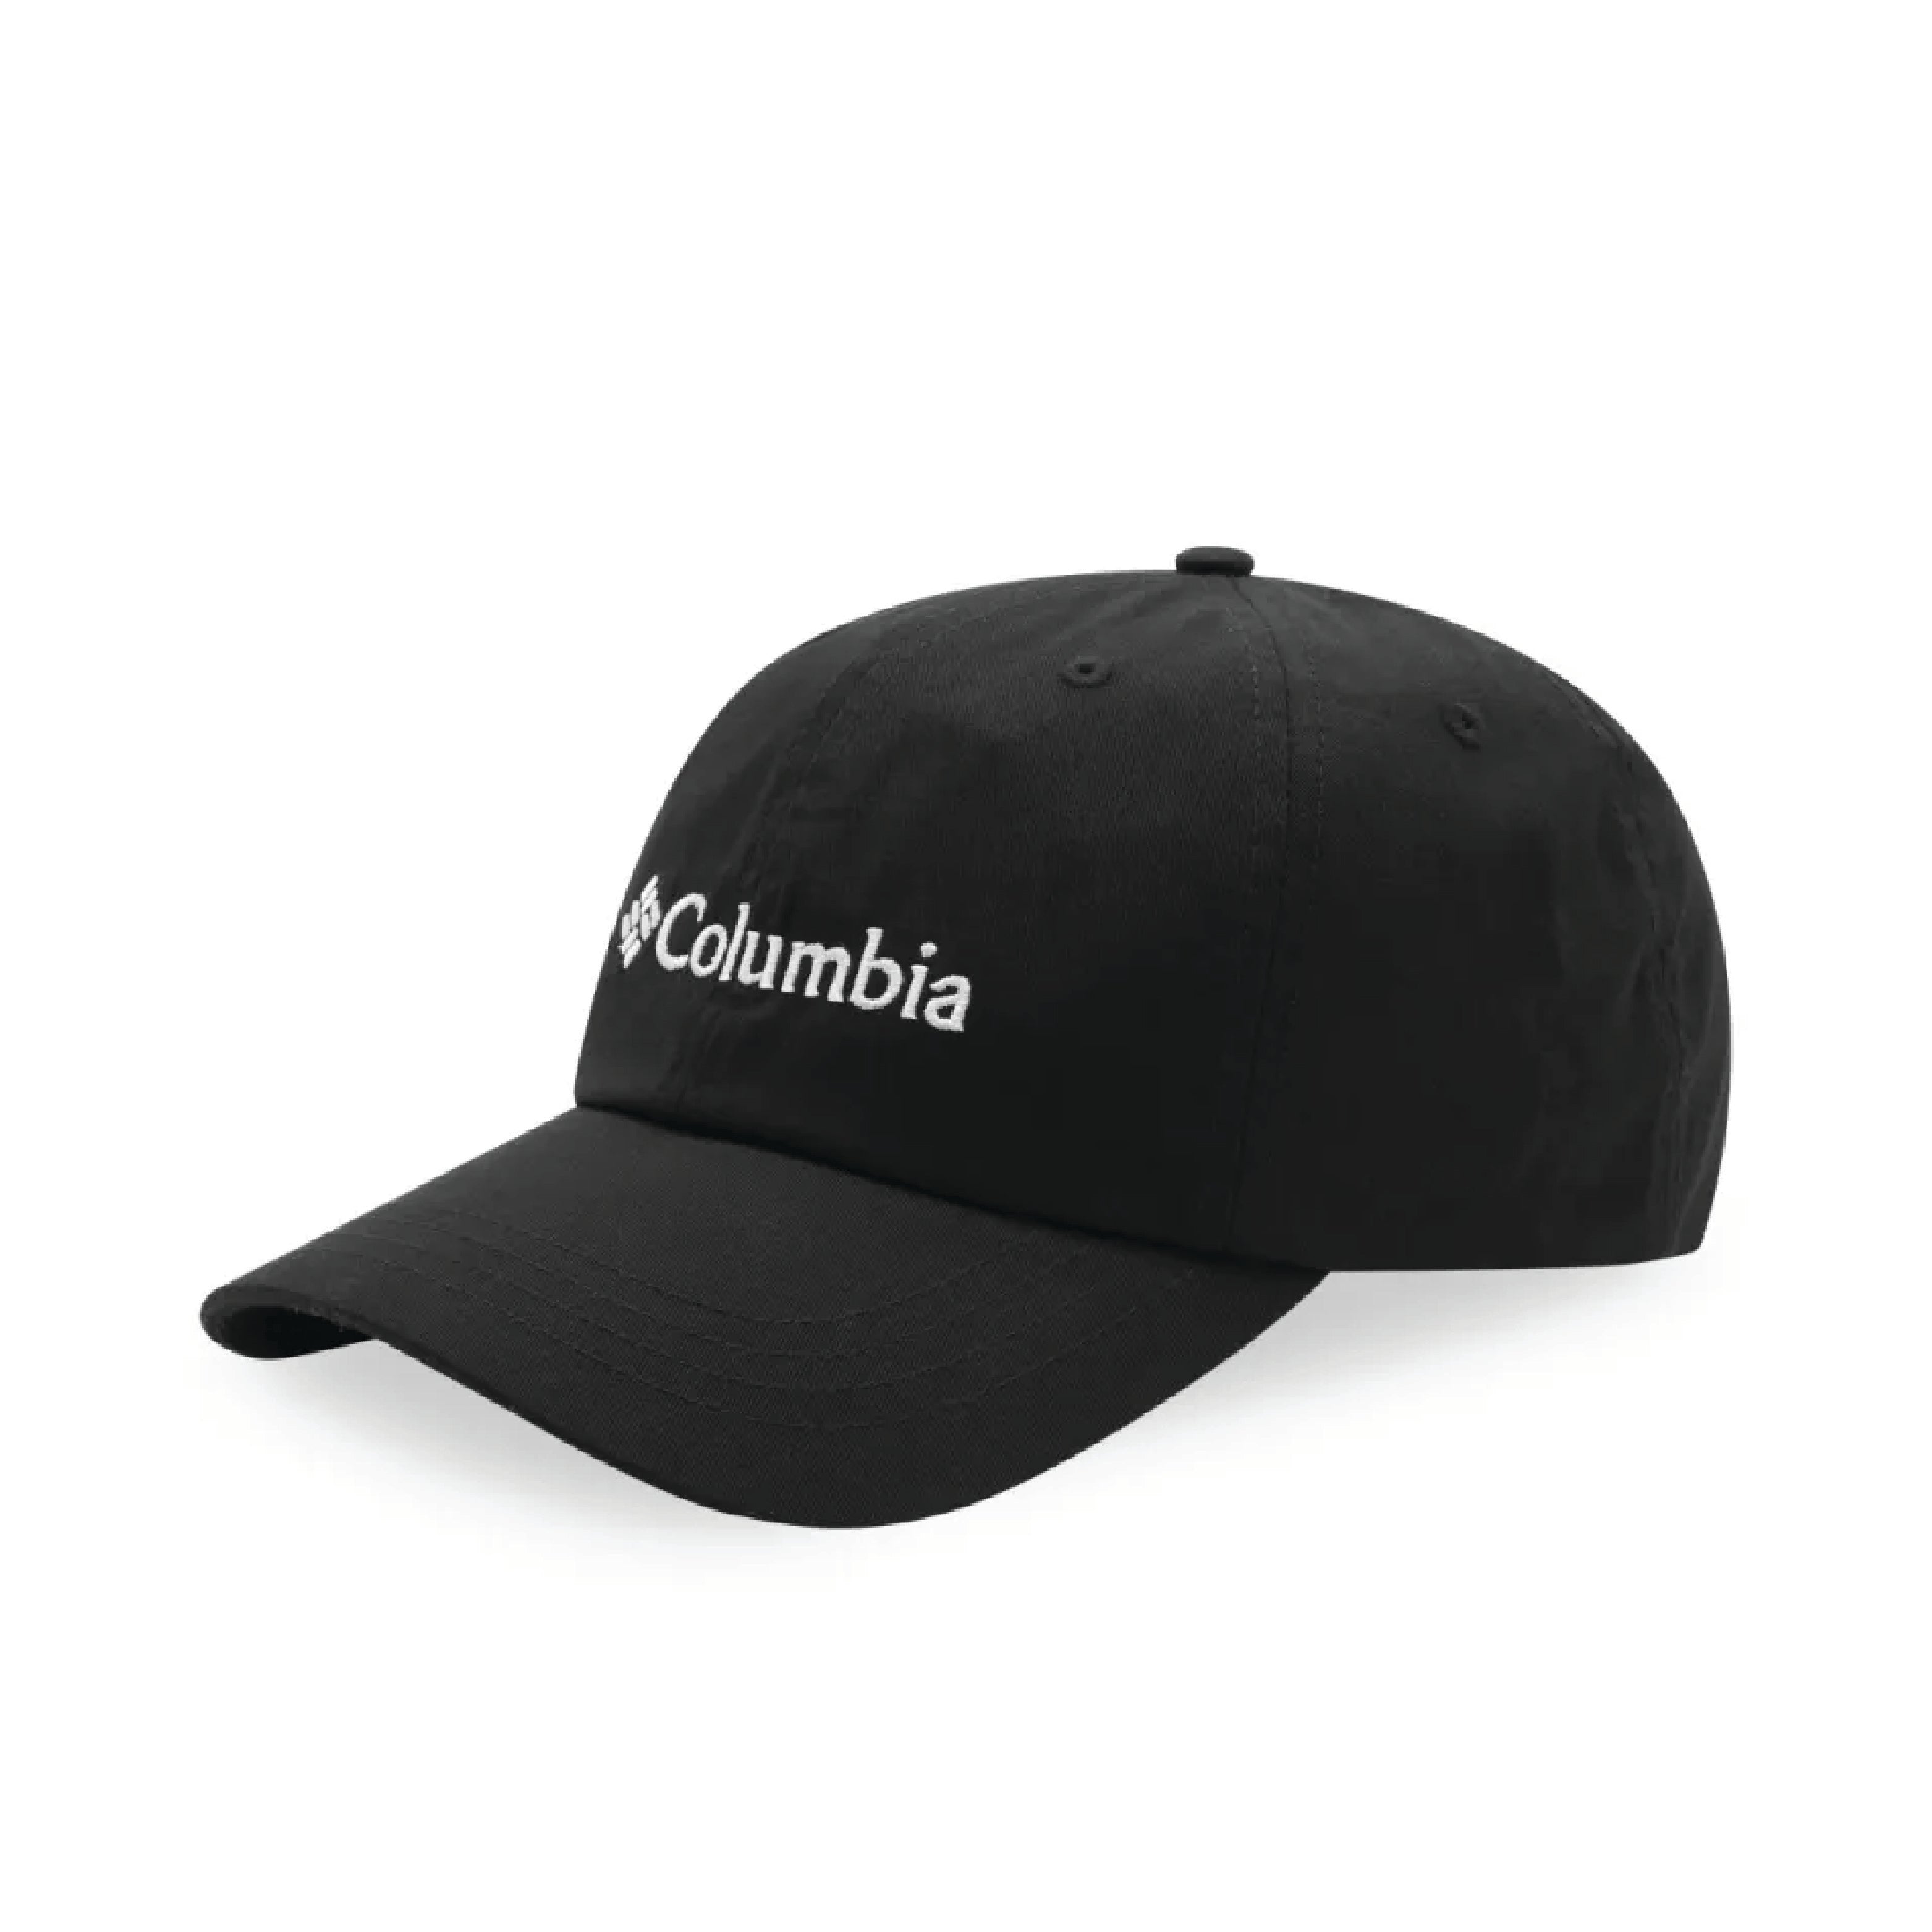 כובע לוגו Columbia Roc II שחור ולבן